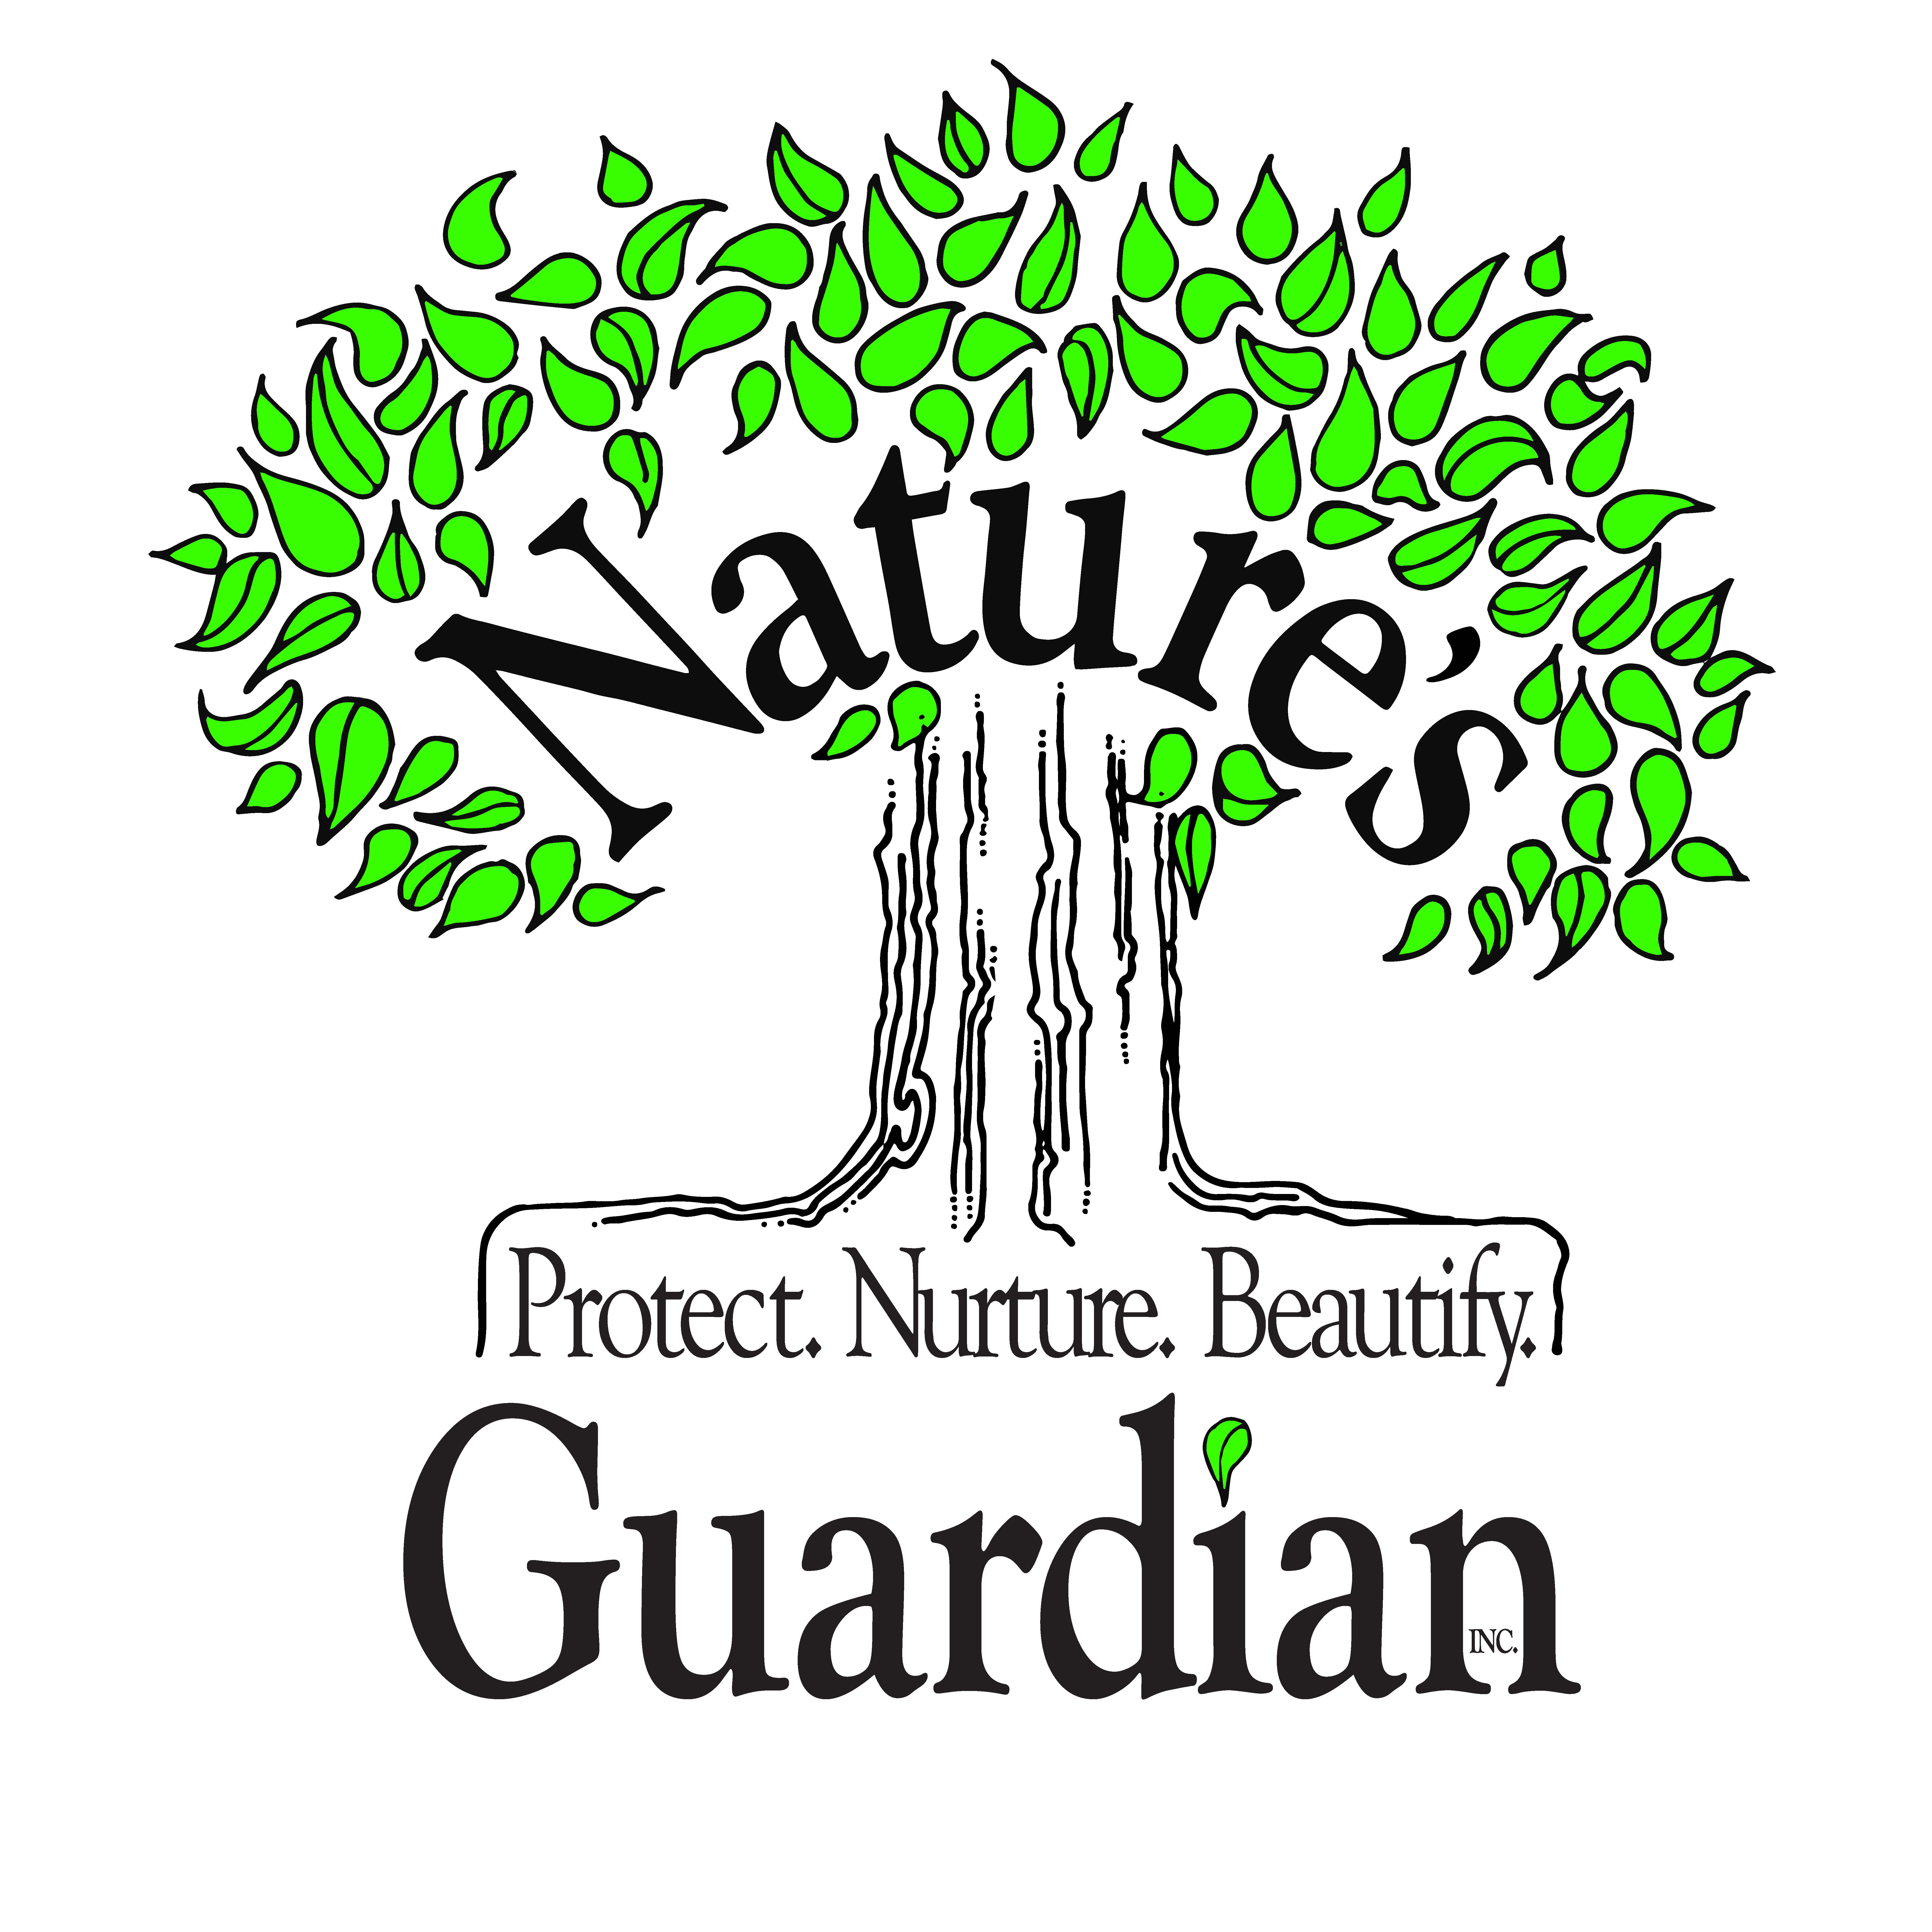 Nature's Guardian, Inc.